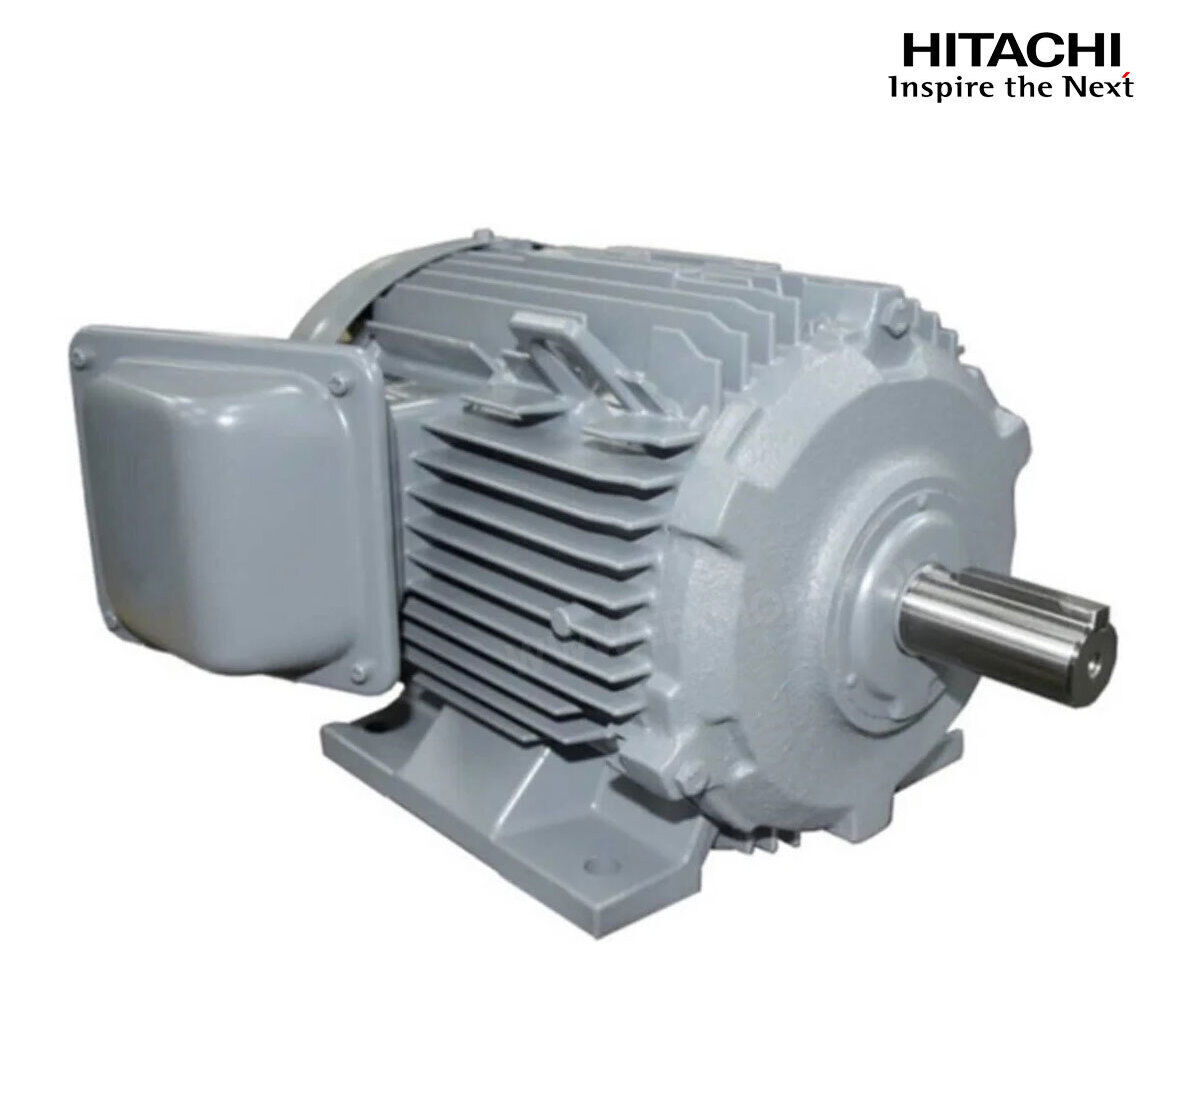 มอเตอร์ฮิตาชิของแท้ 100% HITACHI รุ่น TFO-K กำลัง 3 แรงม้า (2.2 KW.) กำลังไฟฟ้าที่ใช้ 380V ความเร็วรอบตัวเปล่า 1450 RPM แกนเพลามอเตอร์ 28 MM.รับประกัน 3 ปี มีของพร้อมจัดส่งทุกวัน